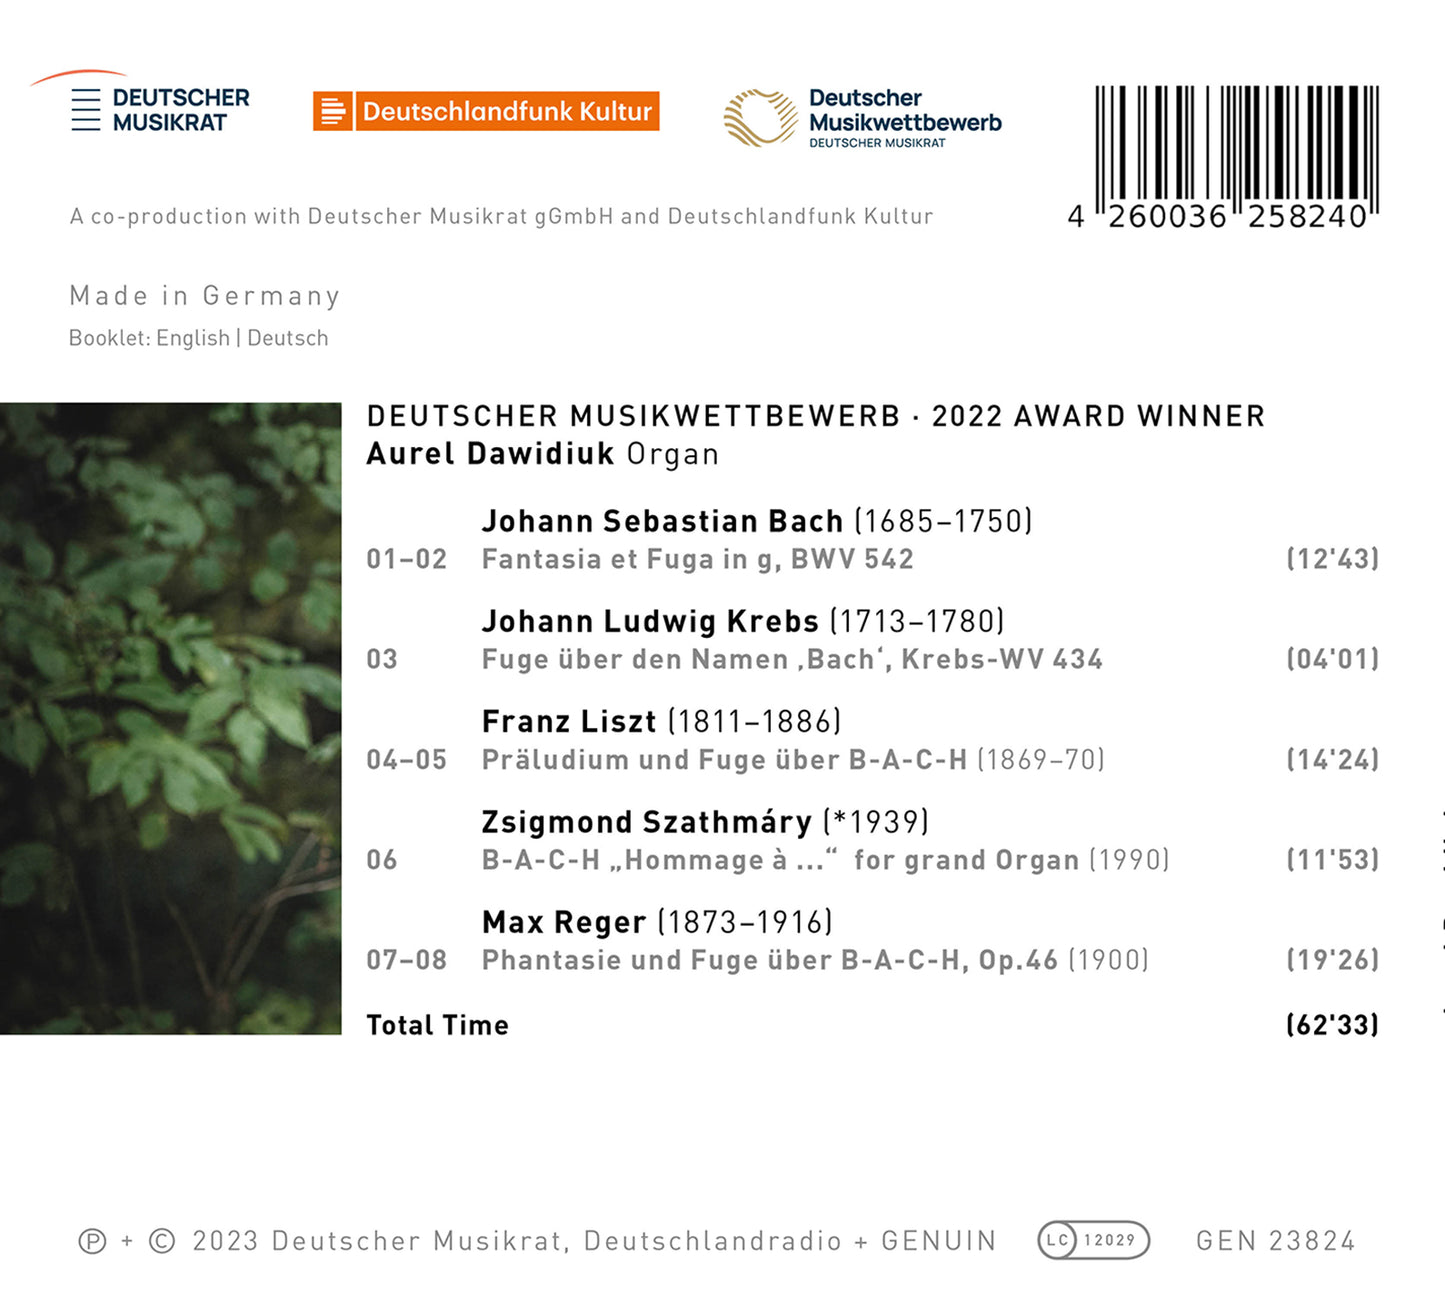 J.S. Bach, Krebs, Liszt, Szathmary & Reger: B-A-C-H "Hommage